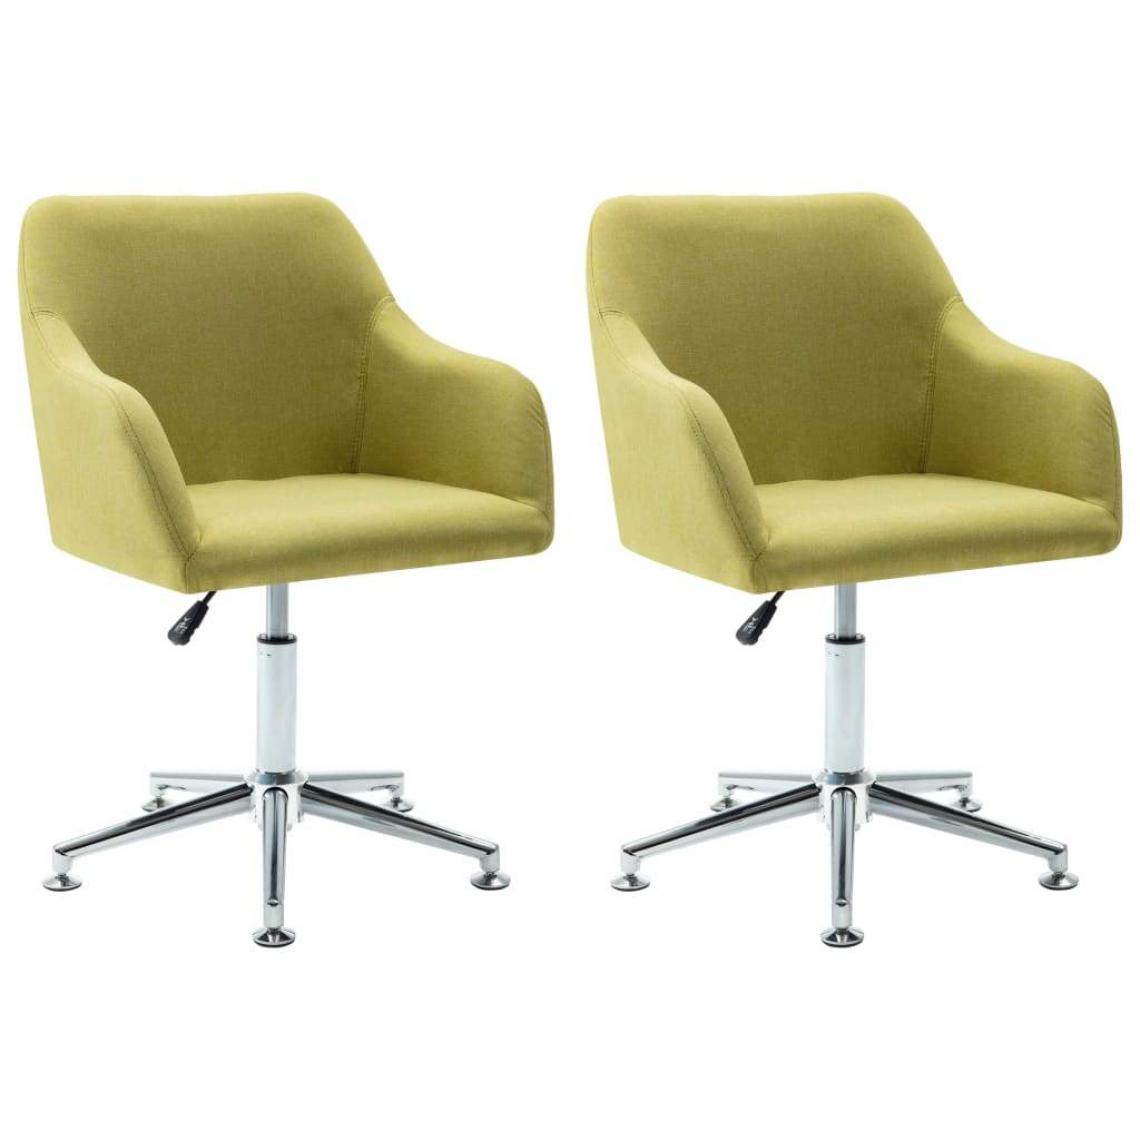 Decoshop26 - Lot de 2 chaises de salle à manger cuisine pivotantes design contemporain tissu vert CDS020944 - Chaises